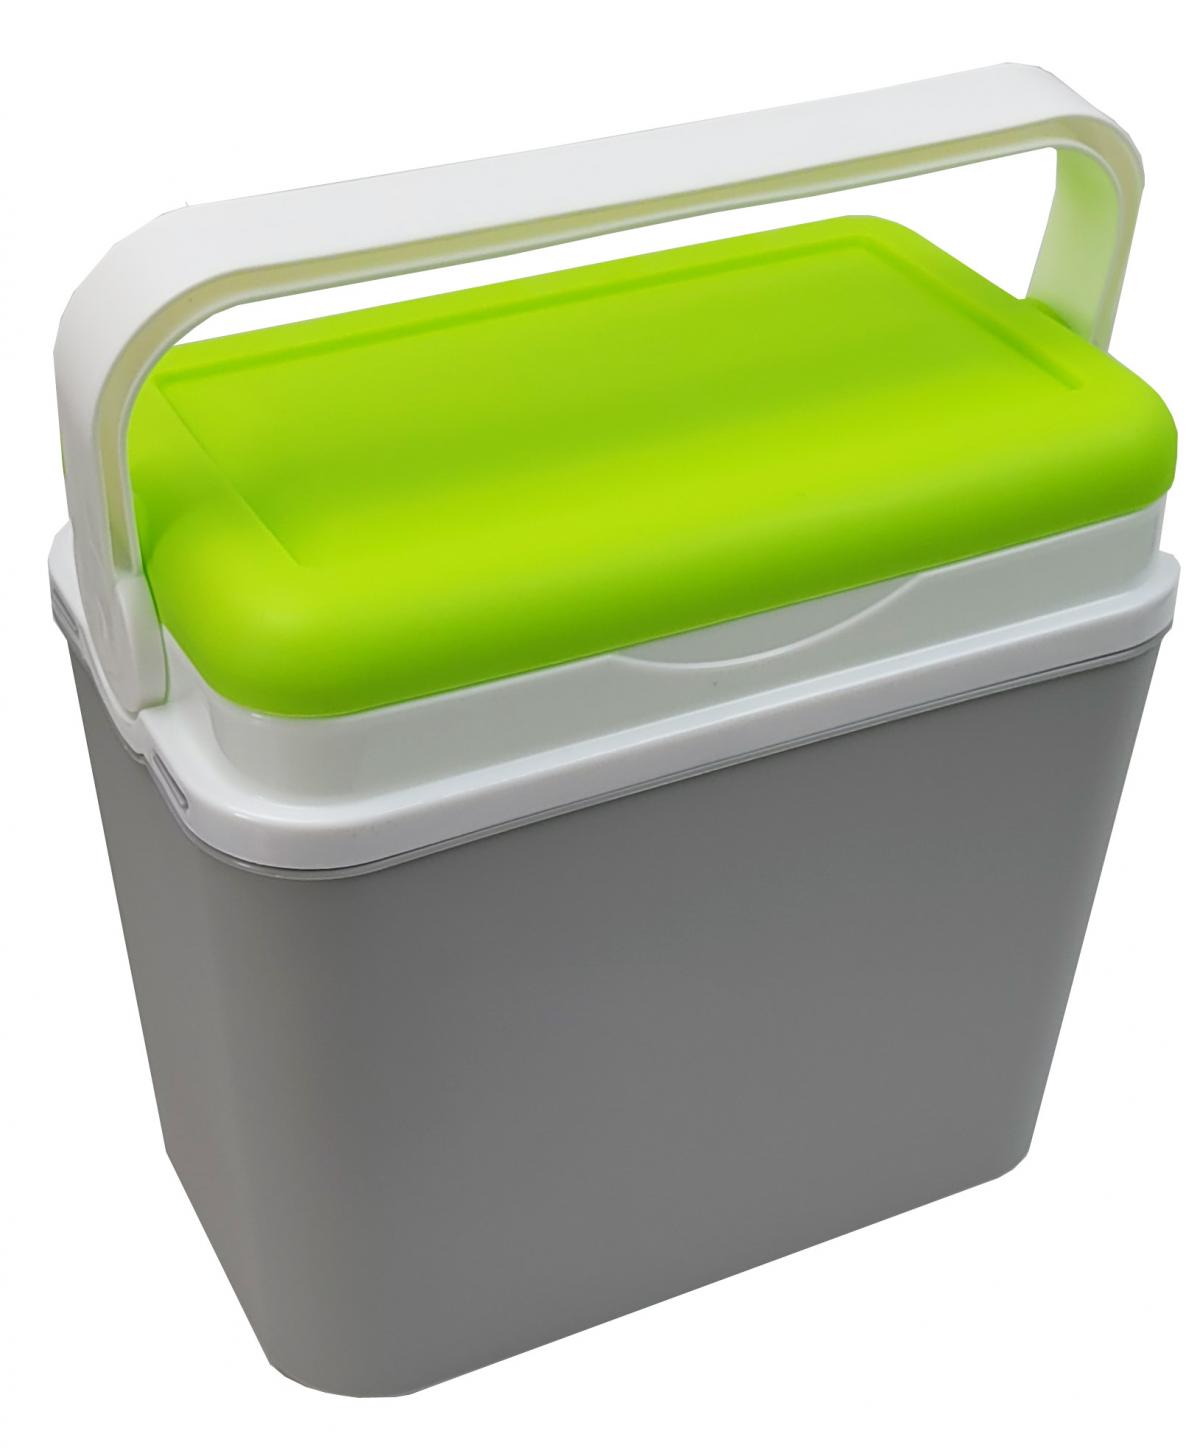 Preissturz » Kühlbox 10 Liter kleine Kühltasche aus Kunststoff lime